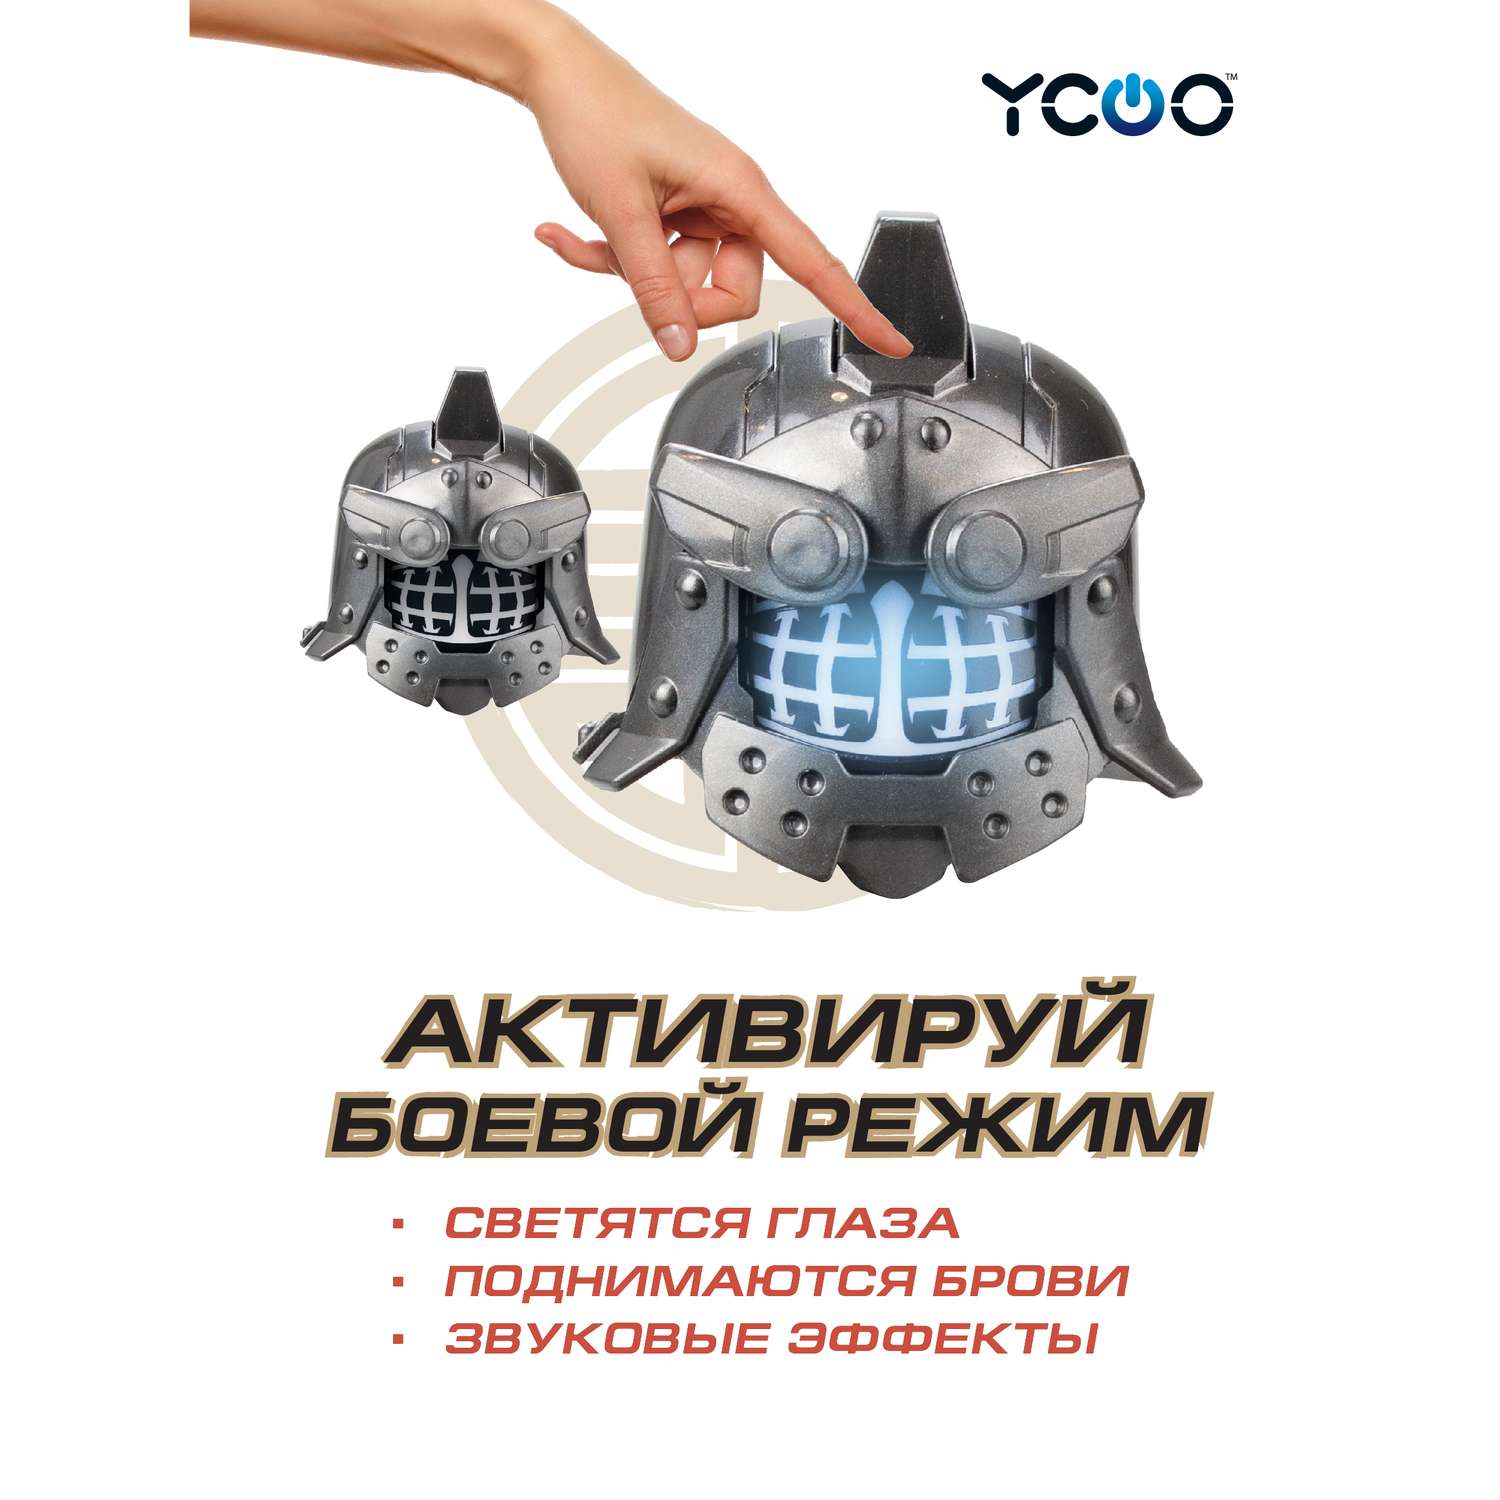 Робот YCOO Боевой одиночный - Гладиатор - фото 3